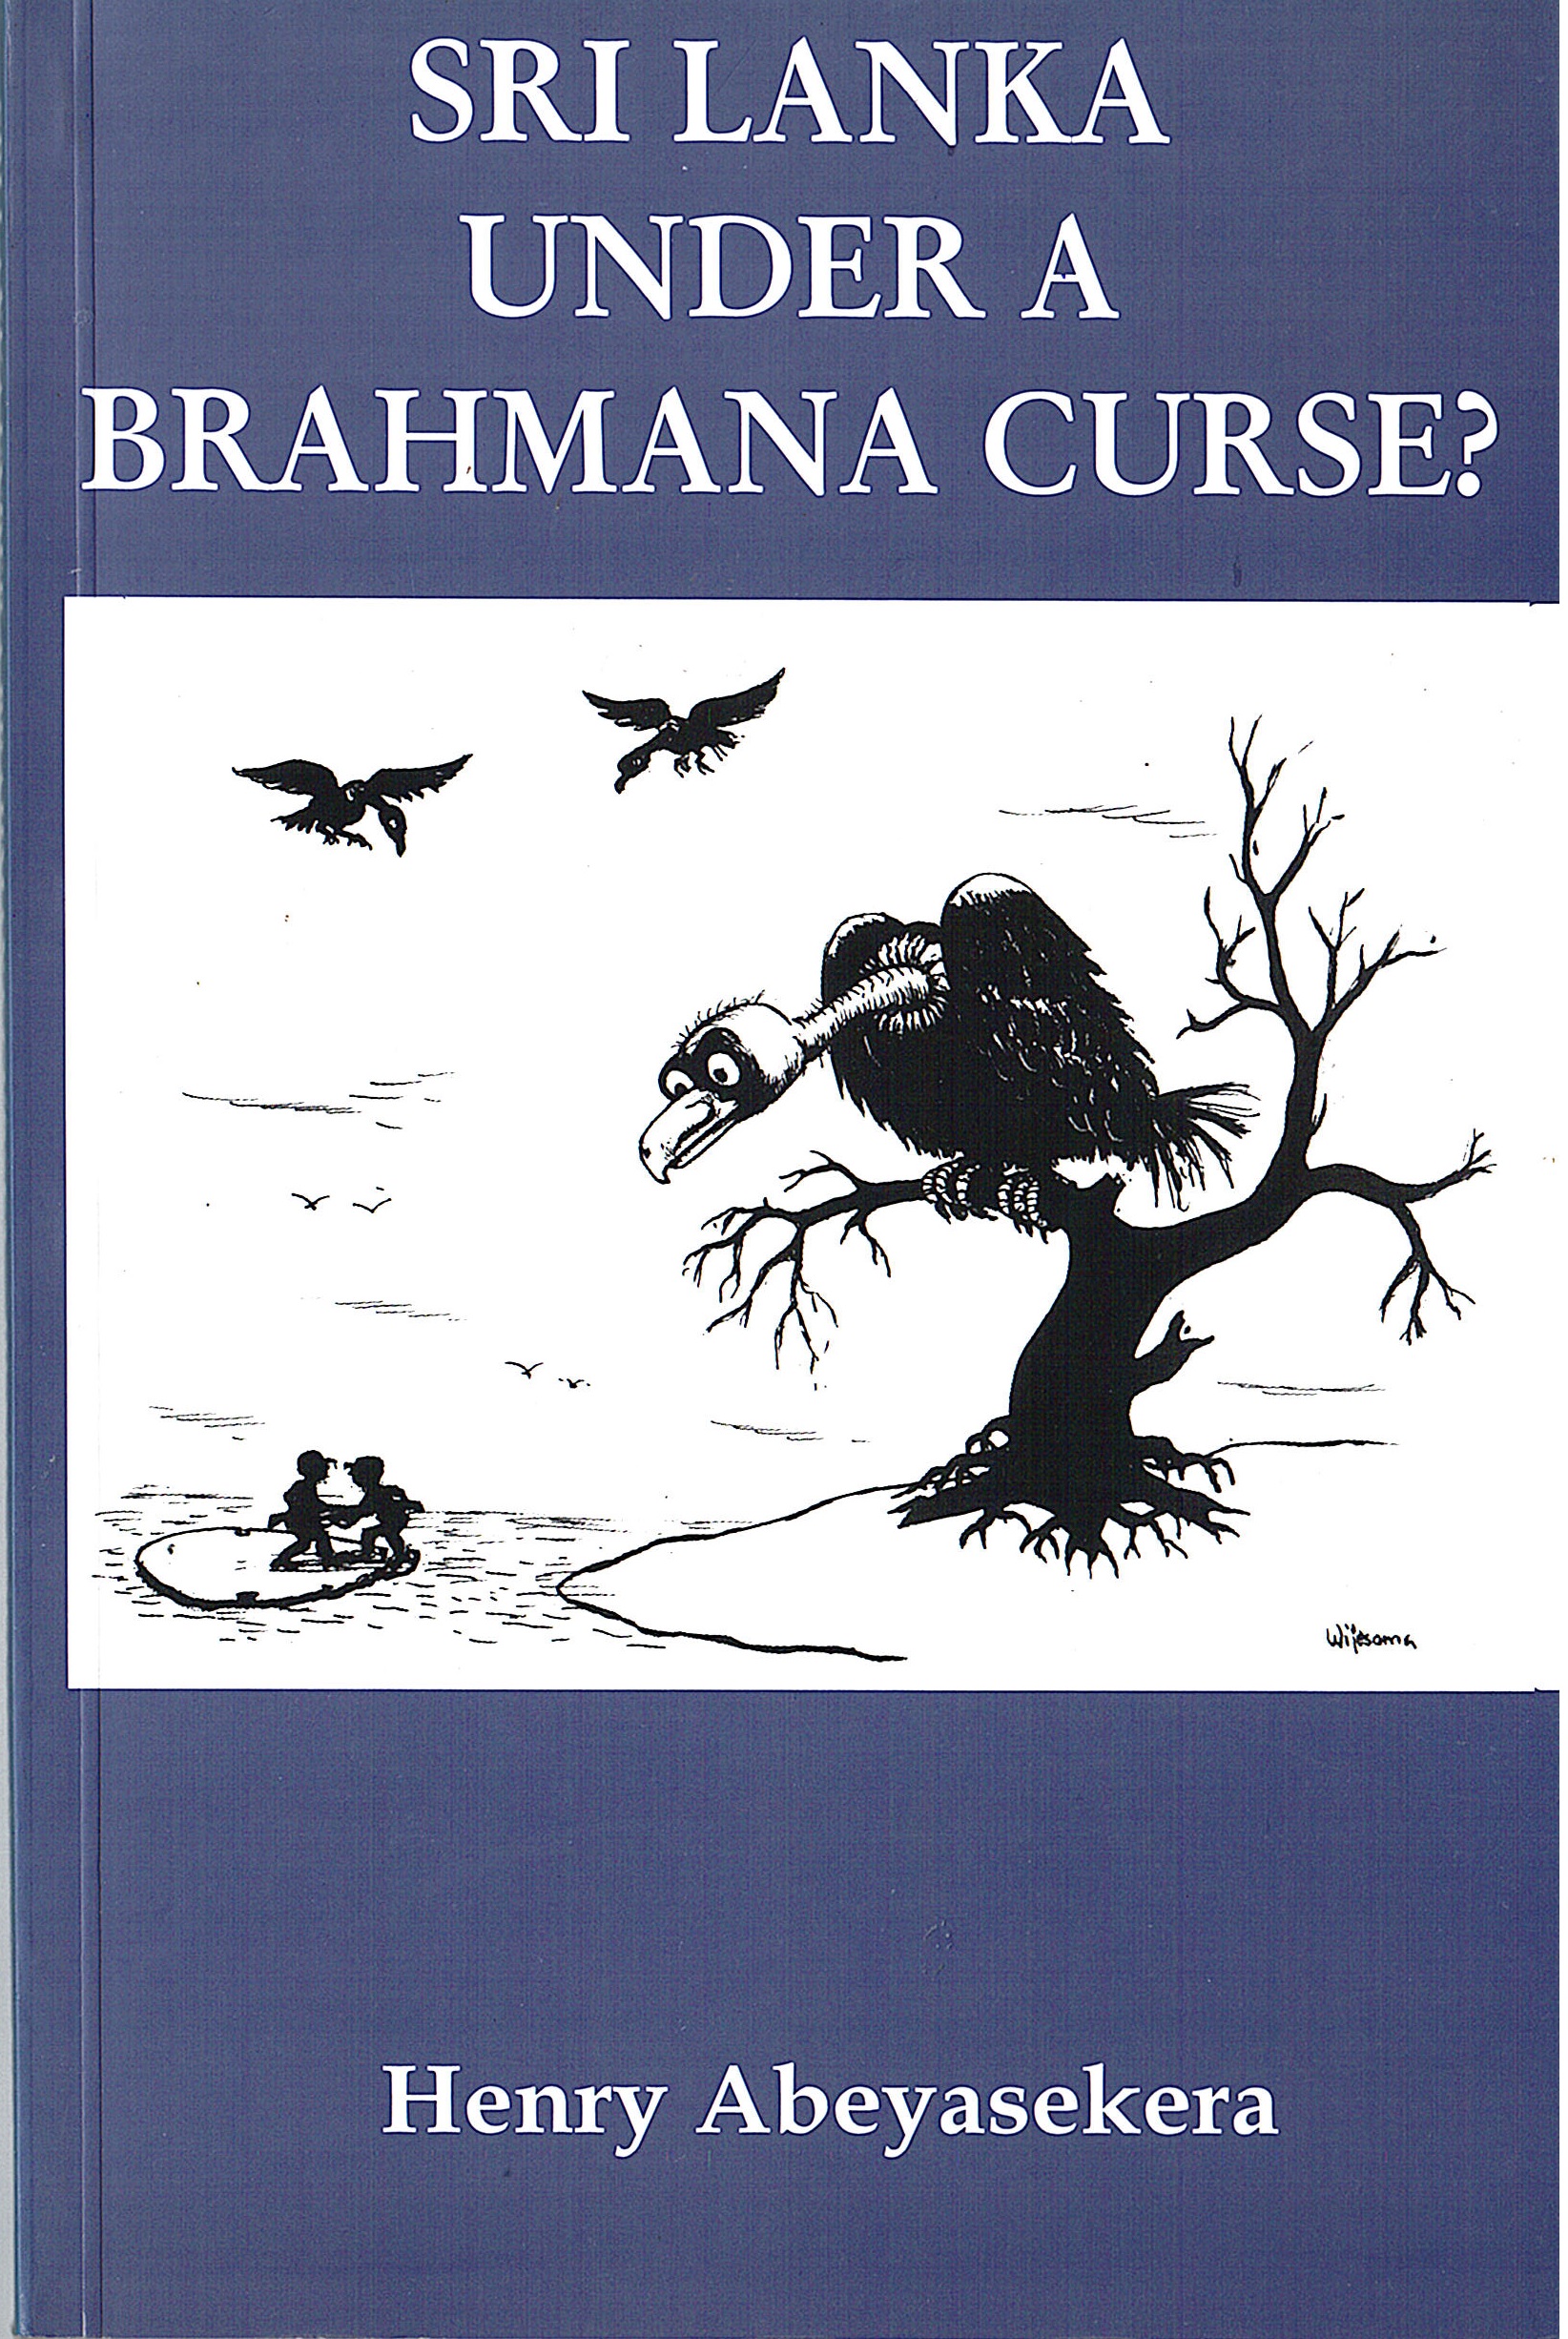 Sri Lanka under a Brahmana curse